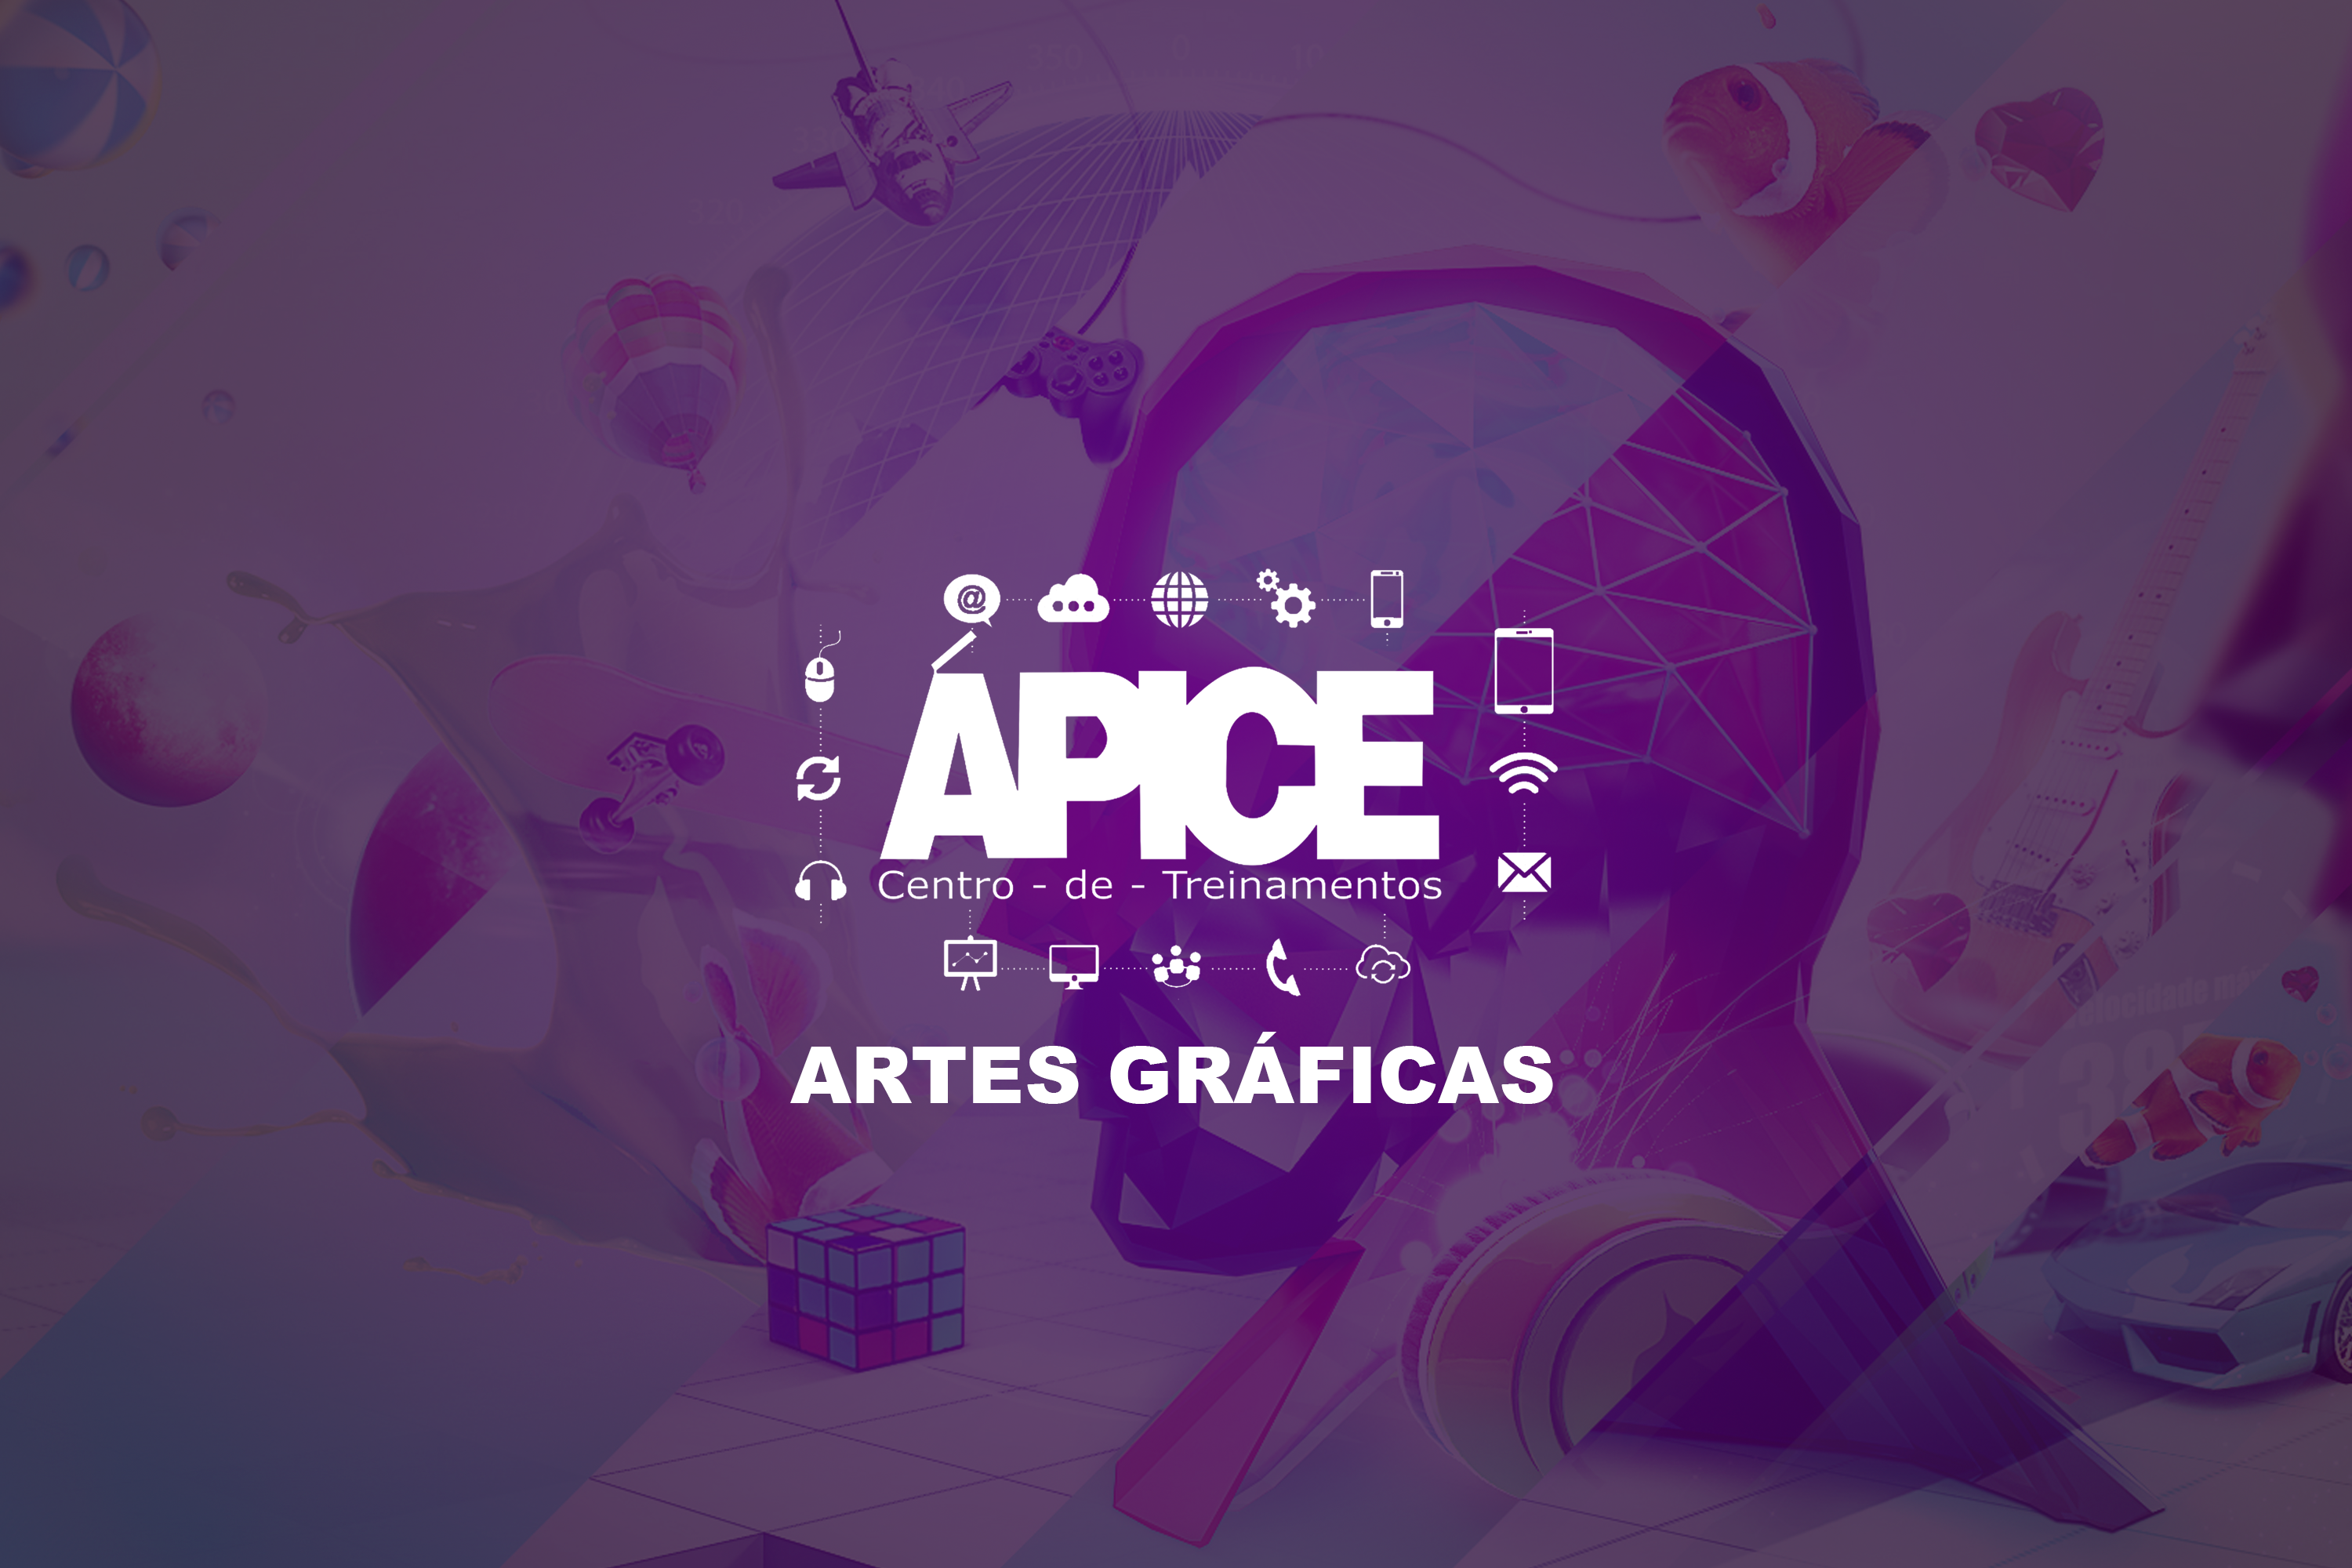 Artes Gráficas (QUA 18:00) - 2023/PA